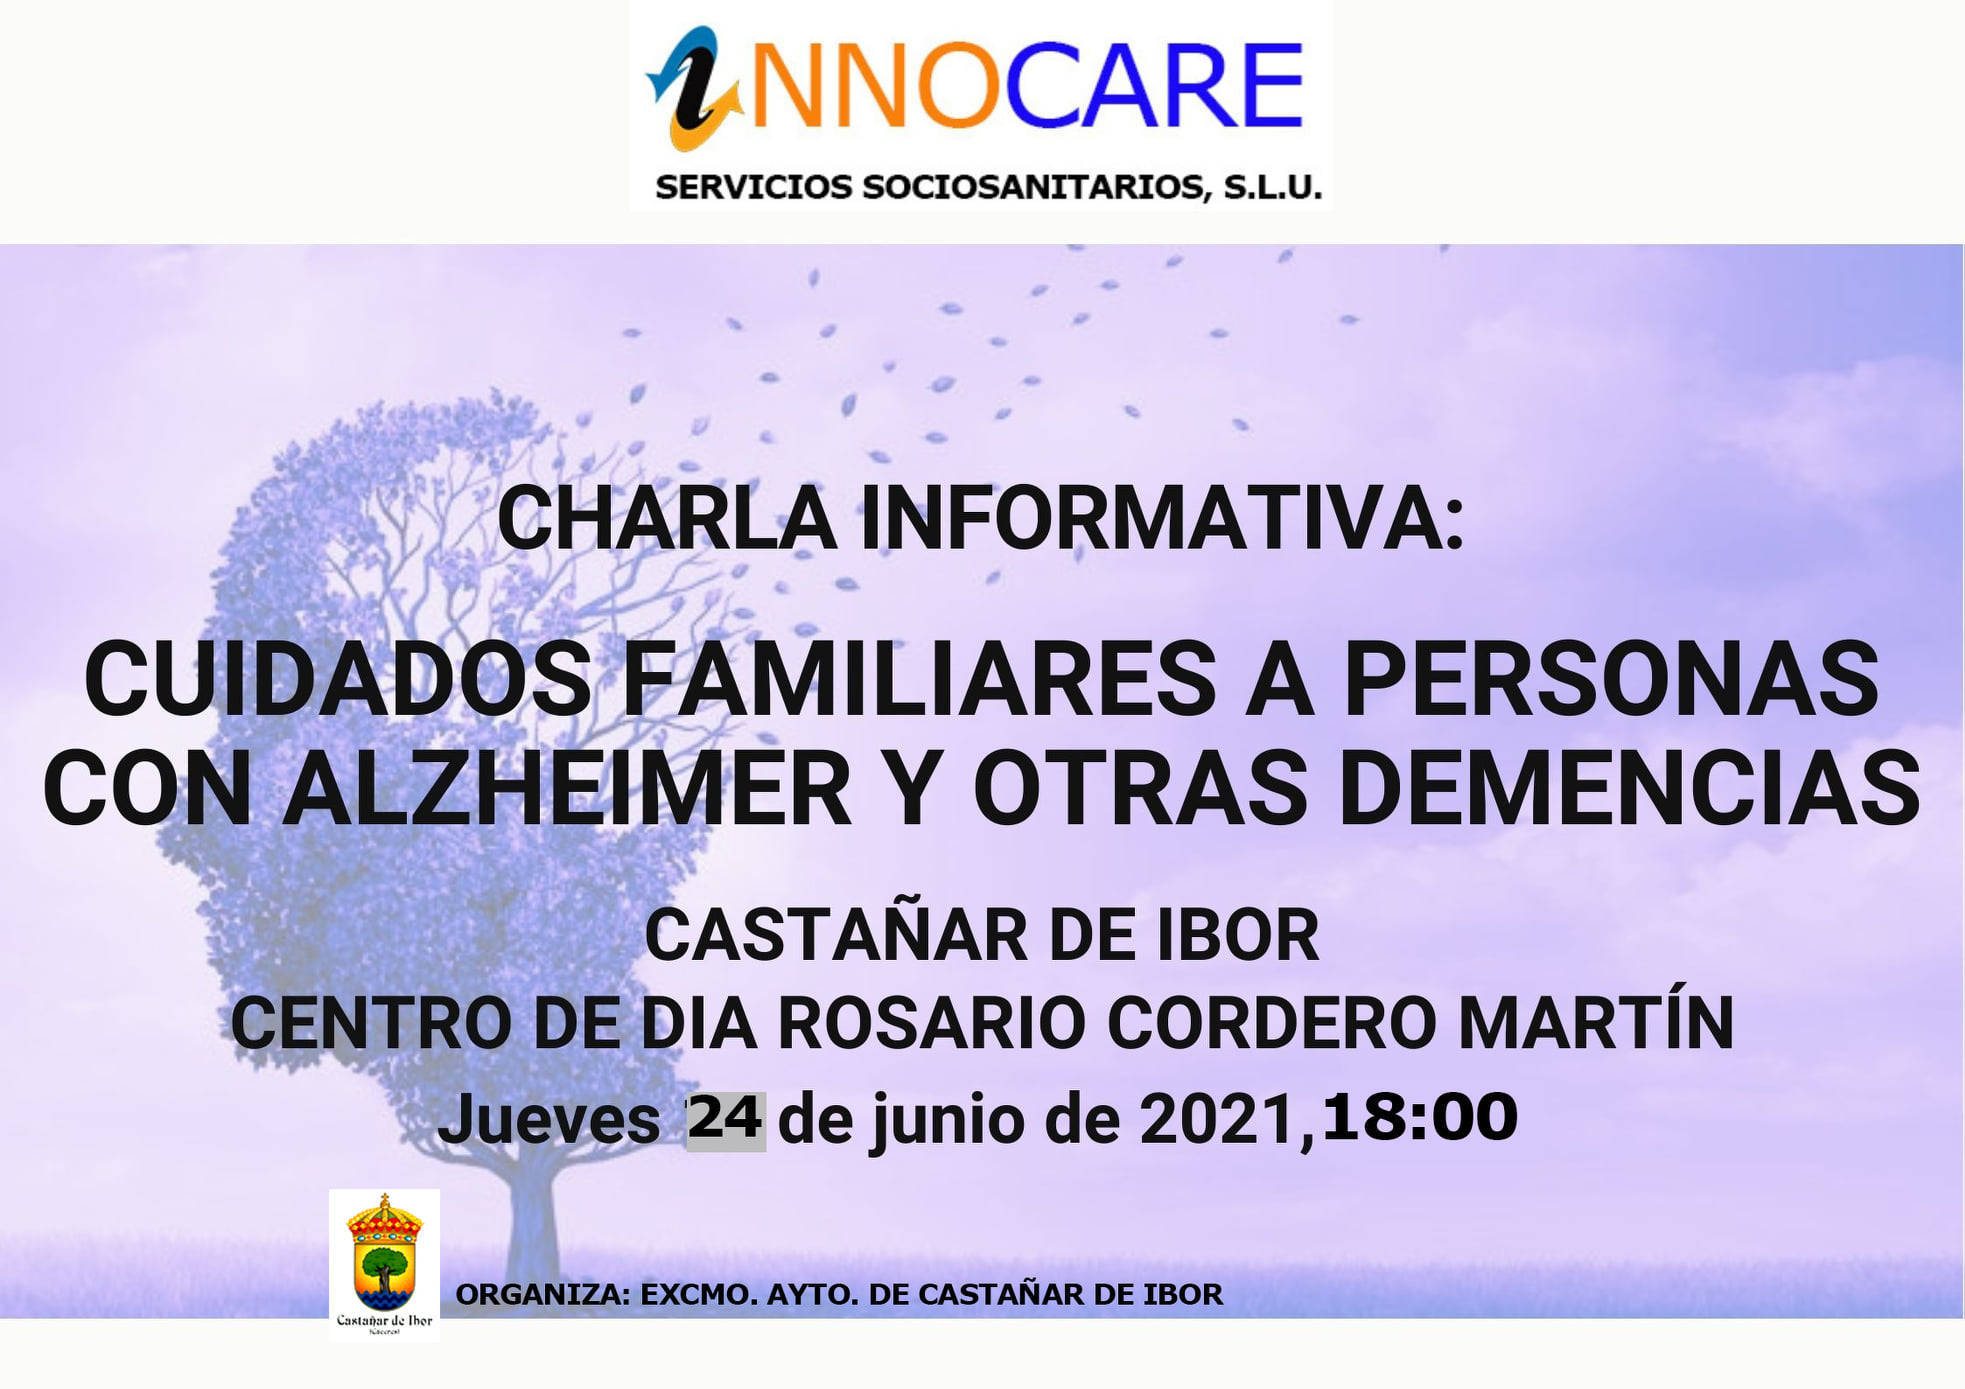 Charla informativa sobre el alzhéimer y otras demencias (2021) - Castañar de Ibor (Cáceres)